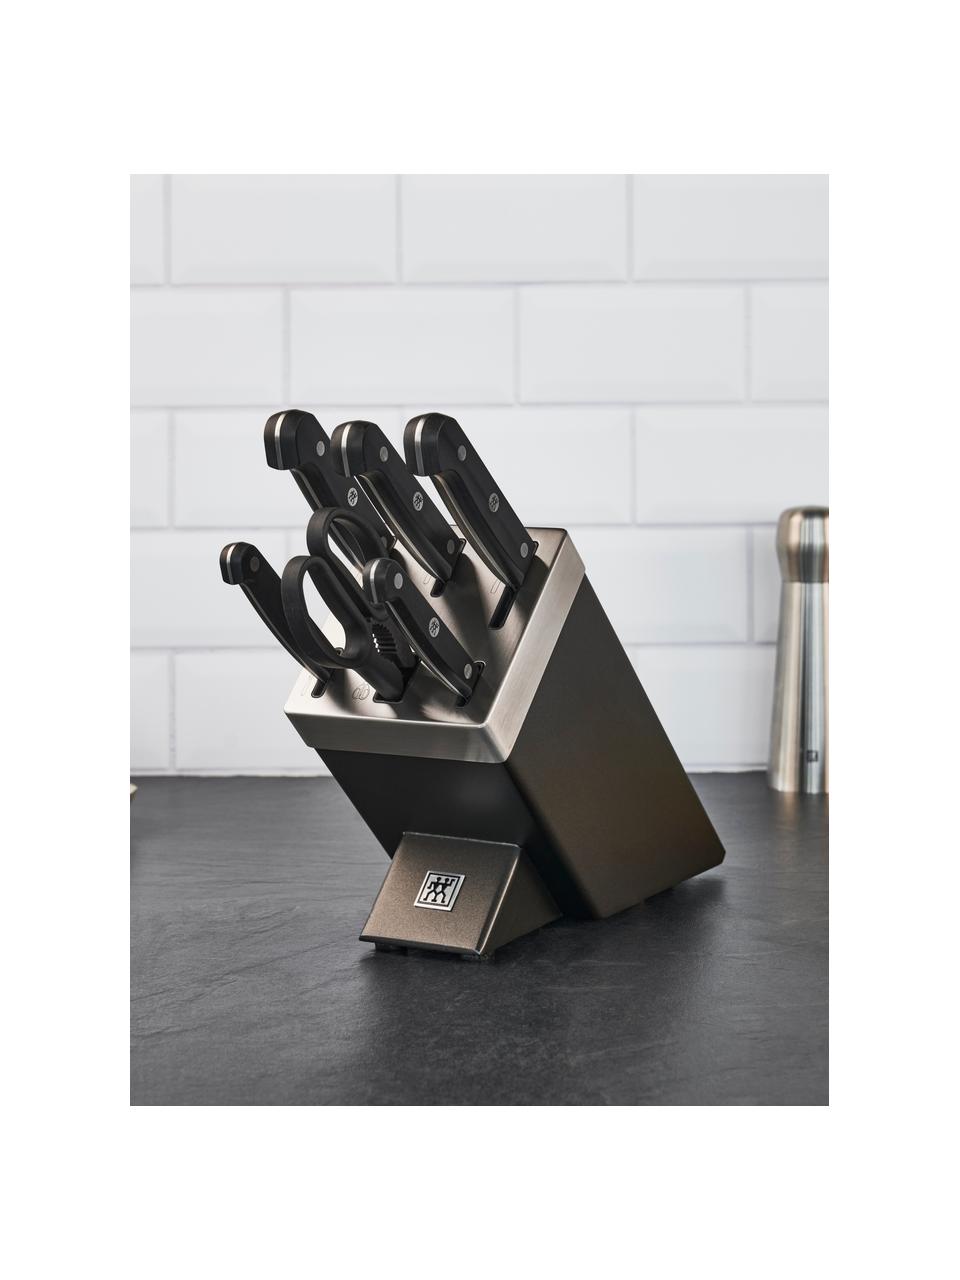 Selbstschärfender Messerblock Gourmet mit 5 Messern und 1 Schere, Griffe: Kunststoff, Grau, Silberfarben, Schwarz, Set mit verschiedenen Grössen